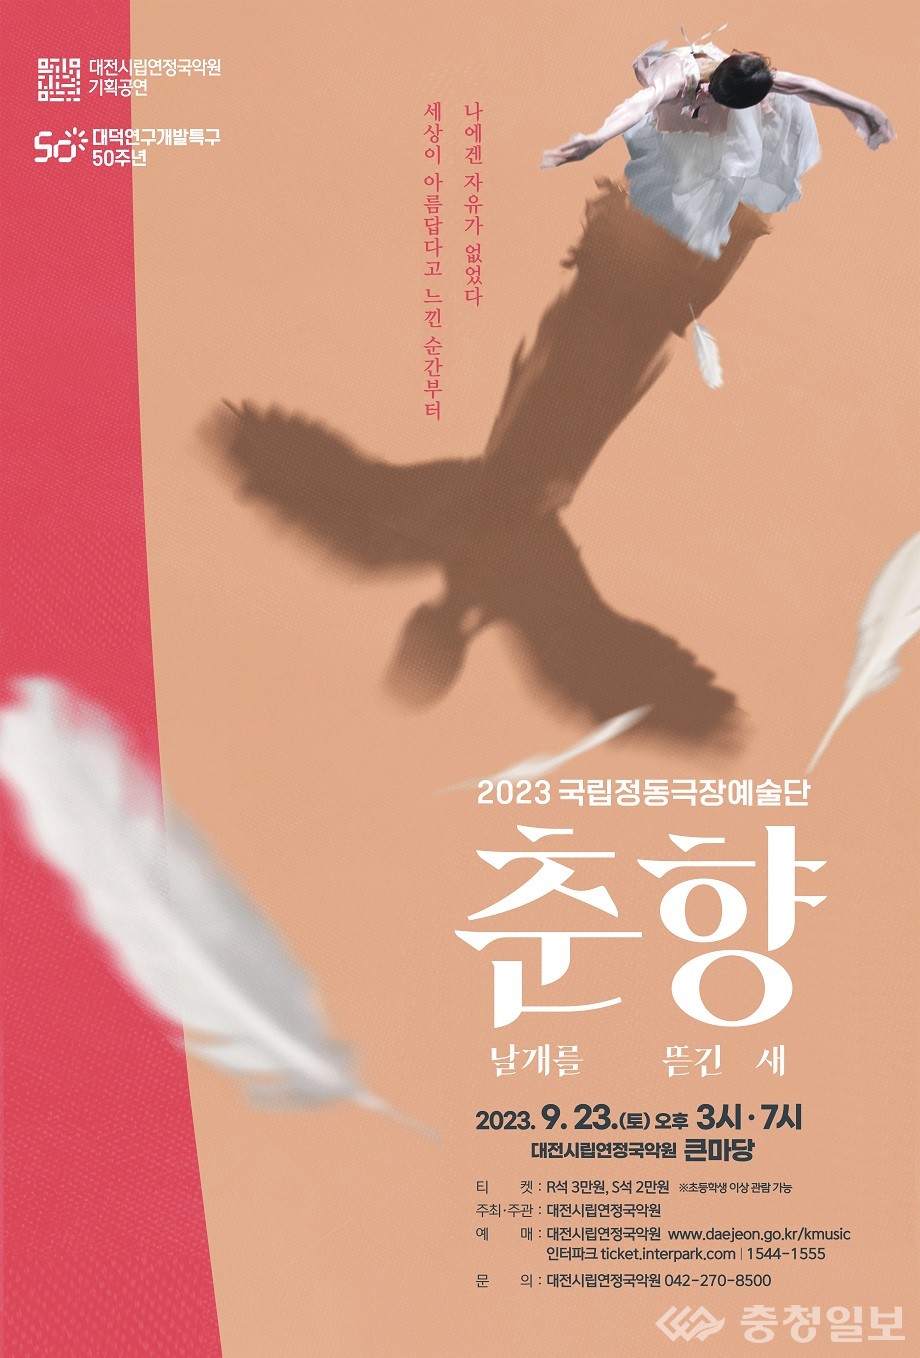 ▲ 국립정동극장예술단, 춘향, 날개를 뜯긴 새 포스터